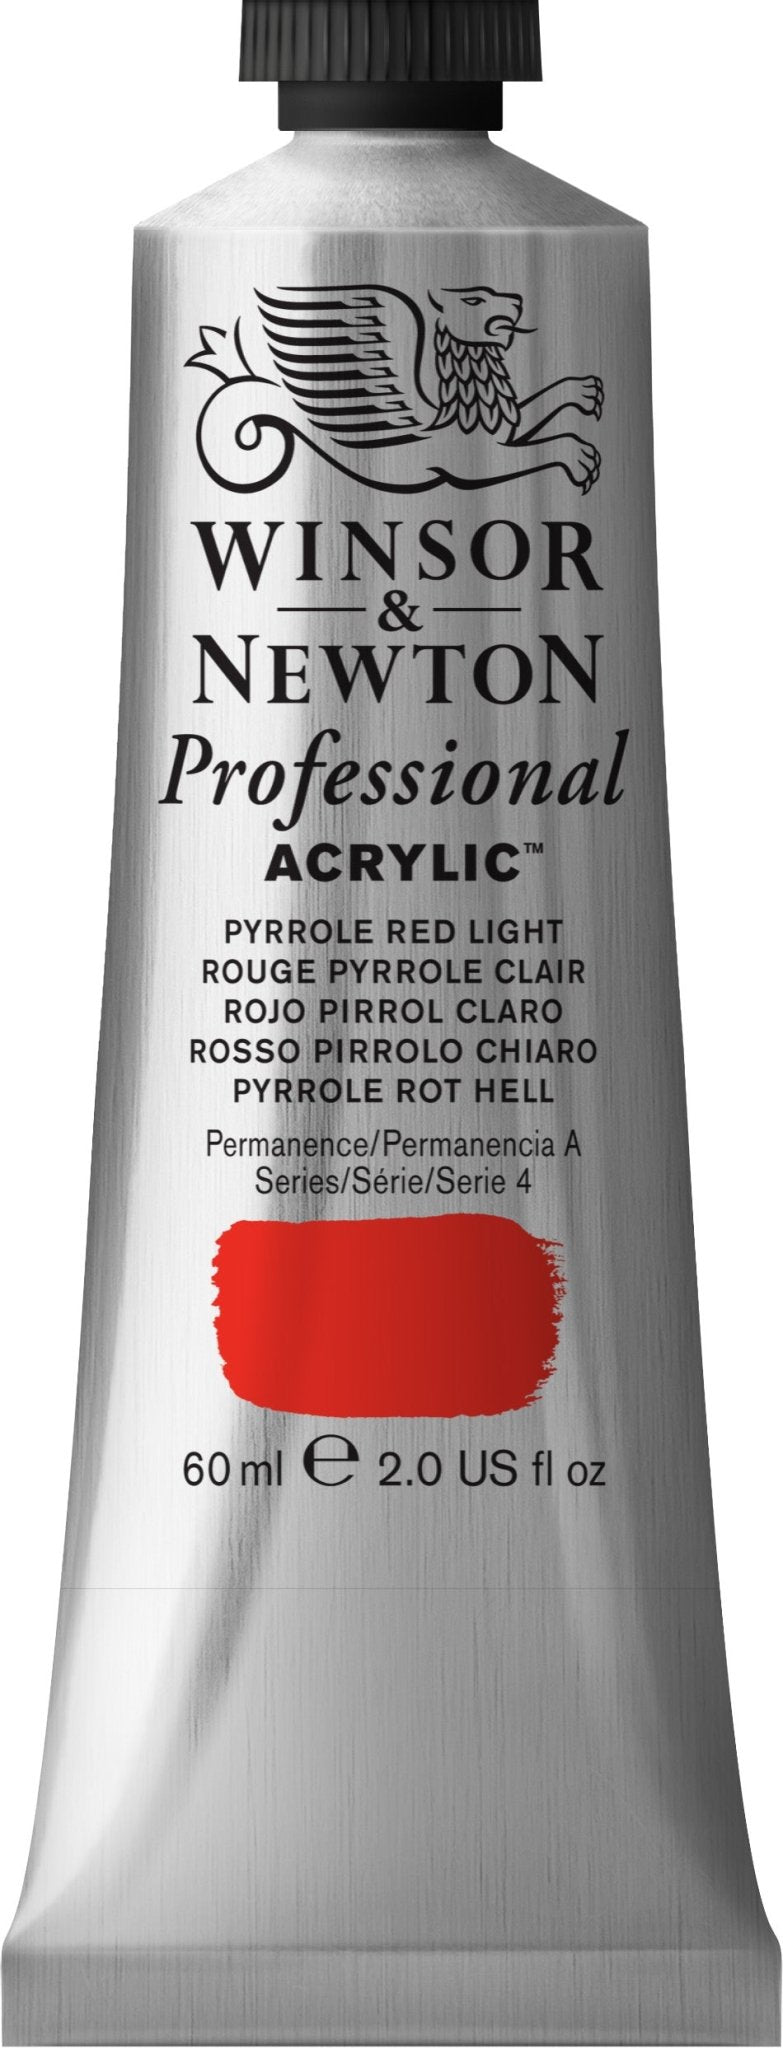 W & N Professional Acrylic 60ml Pyrrole Red Light - theartshop.com.au